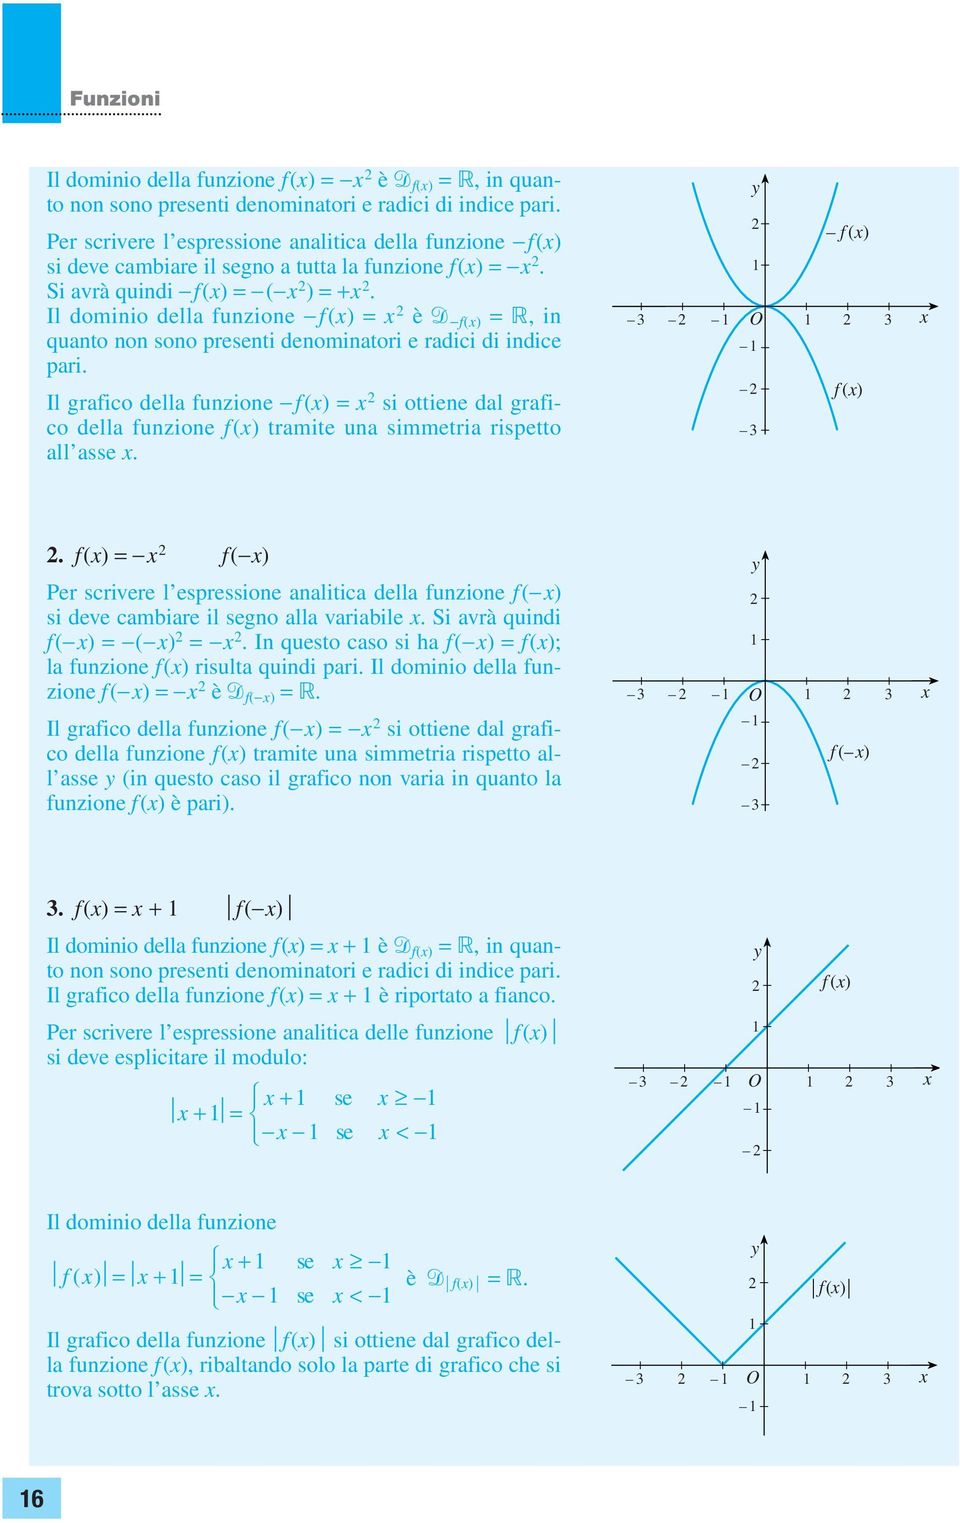 Il grafico della funzione f() = si ottiene dal grafico della funzione f() tramite una simmetria rispetto all asse. f () O f ().